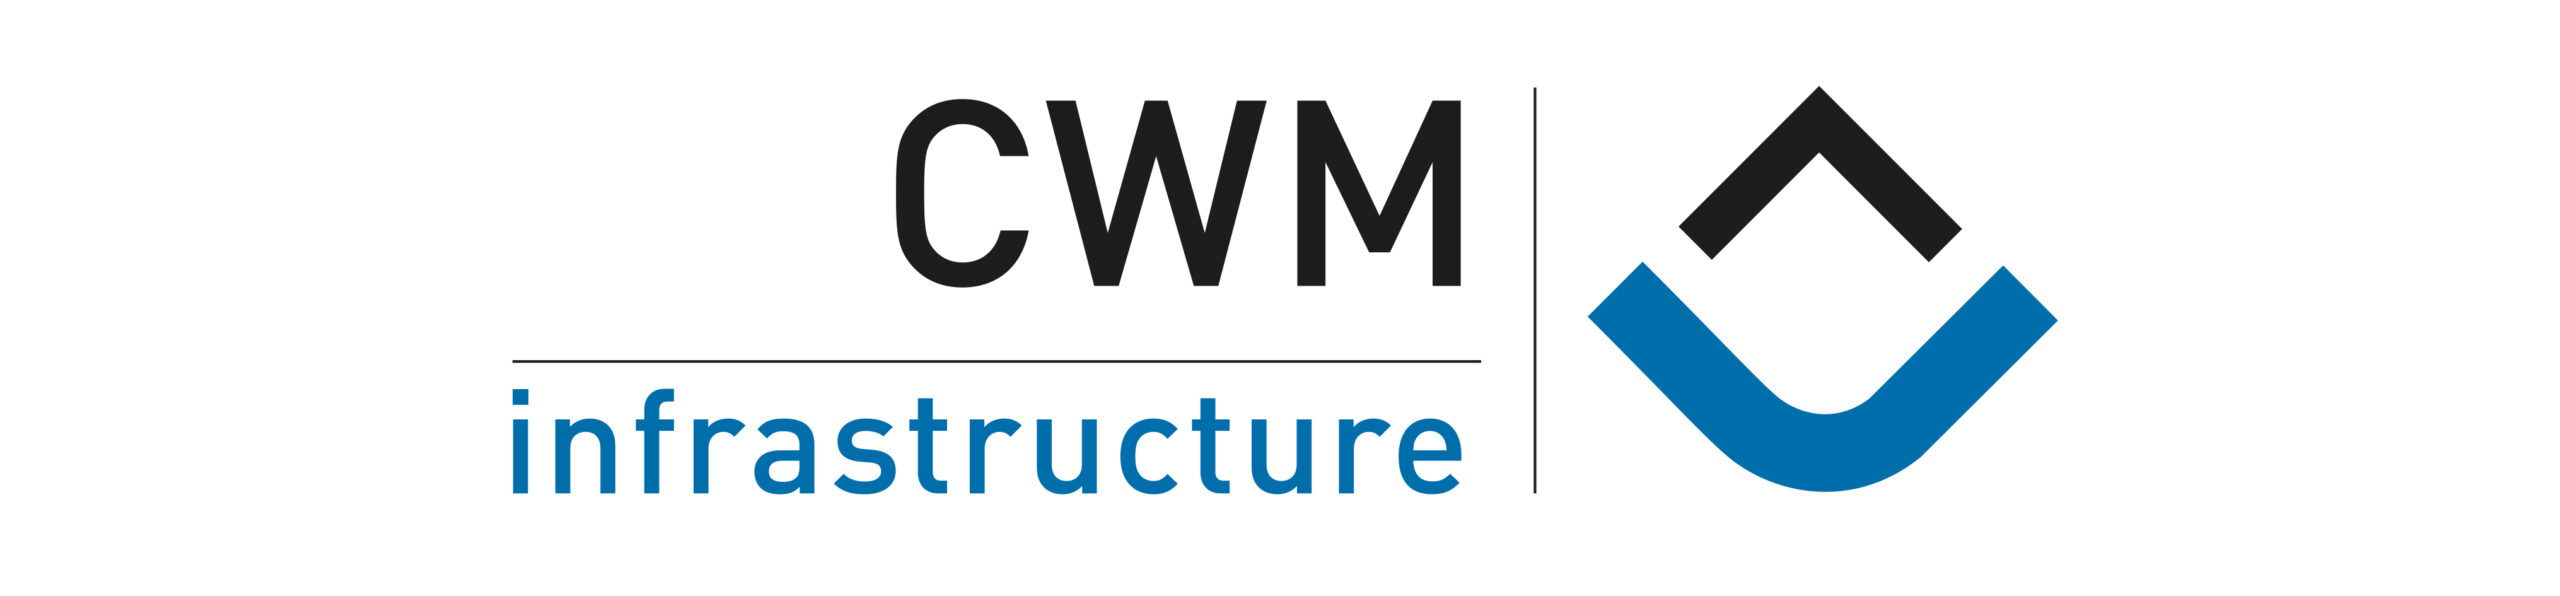 CWM Infrastructure